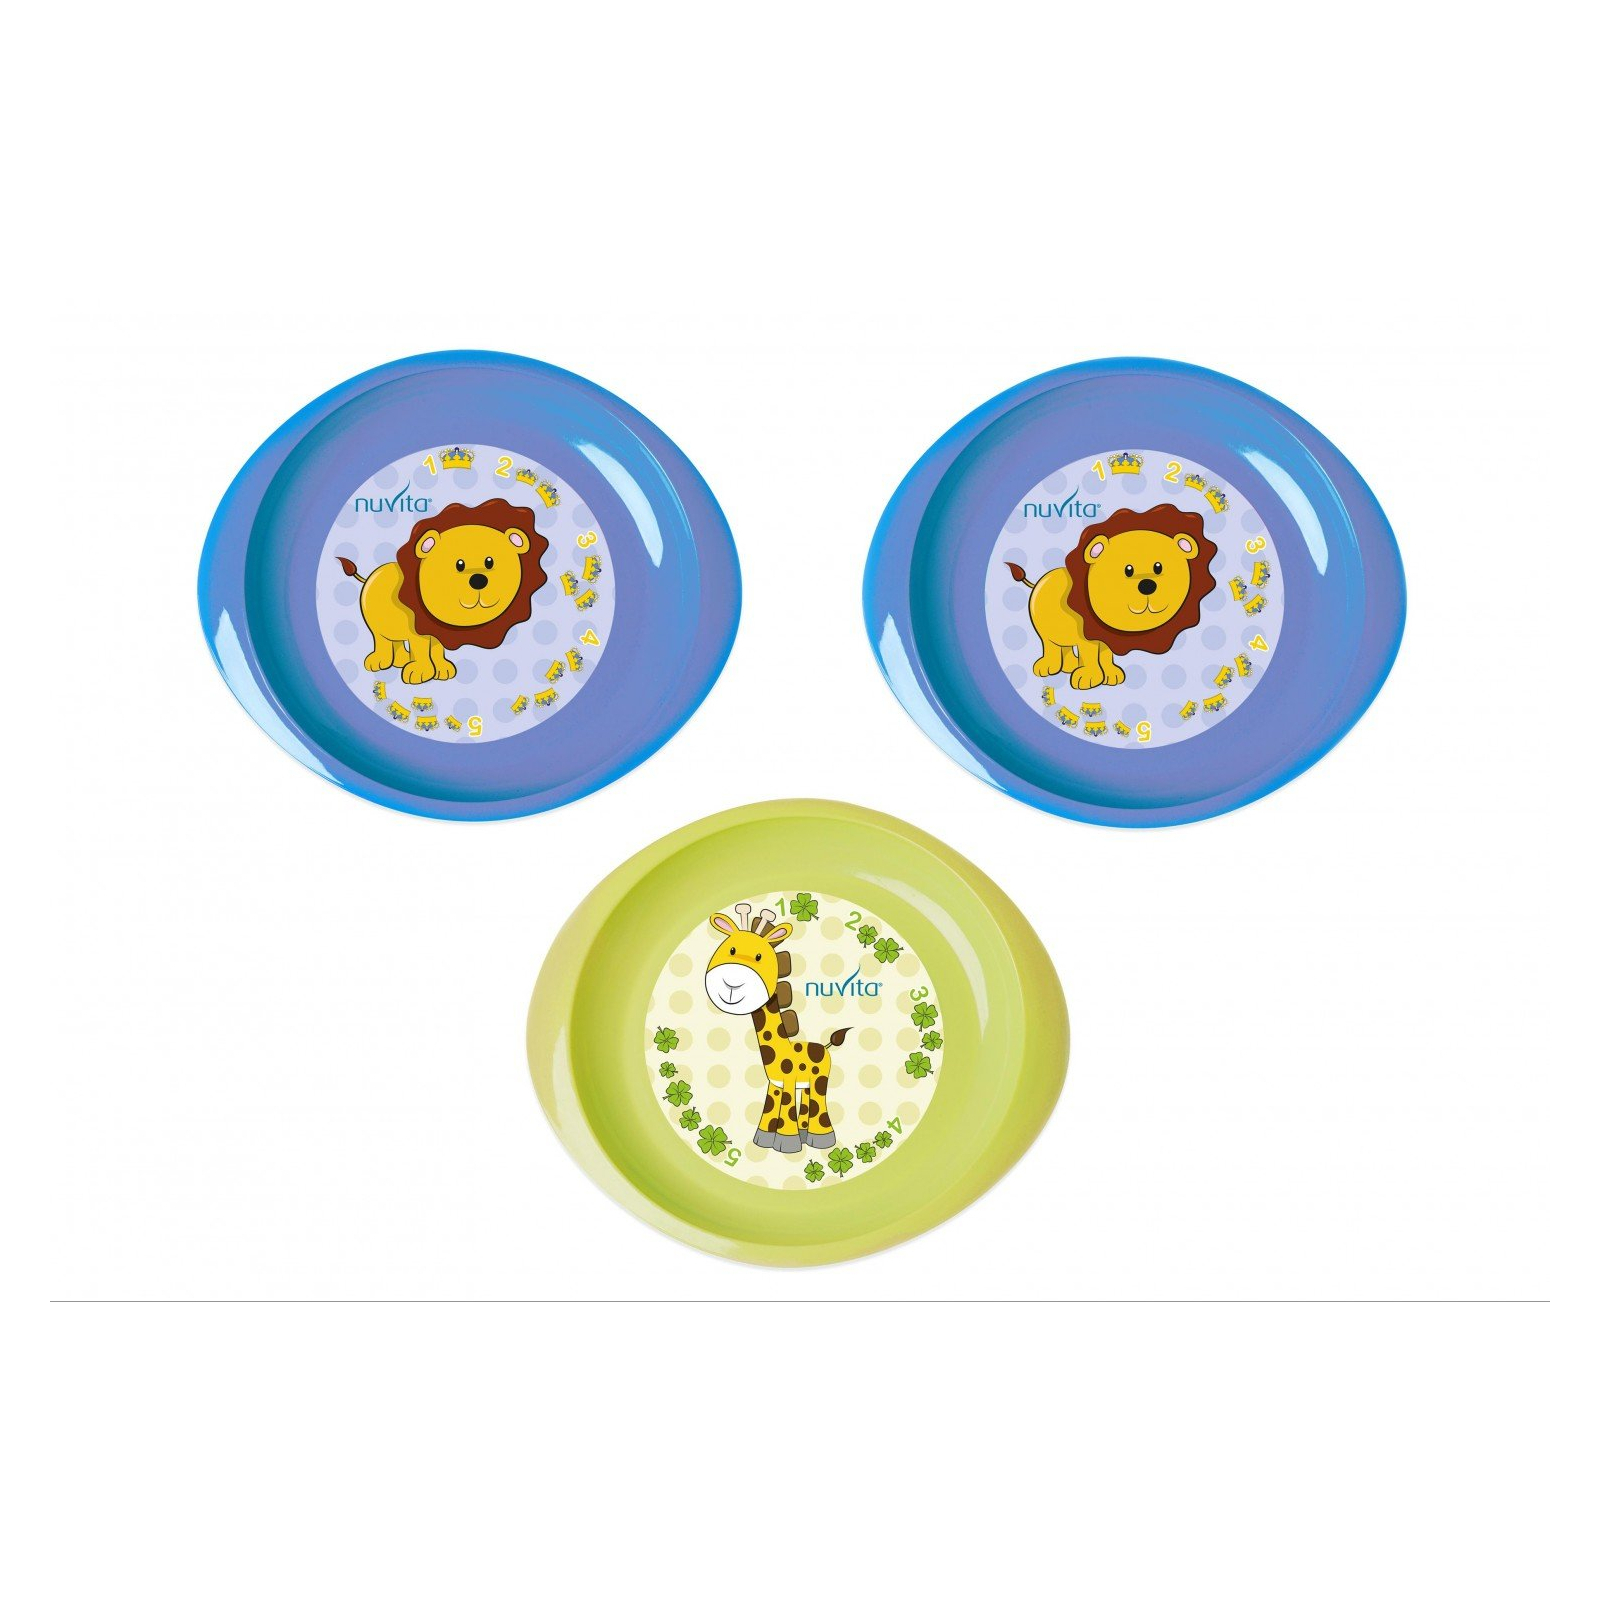 Набір дитячого посуду Nuvita тарелочки 6м+ 3шт. мелкие синие и салатовая (NV1428Blue)